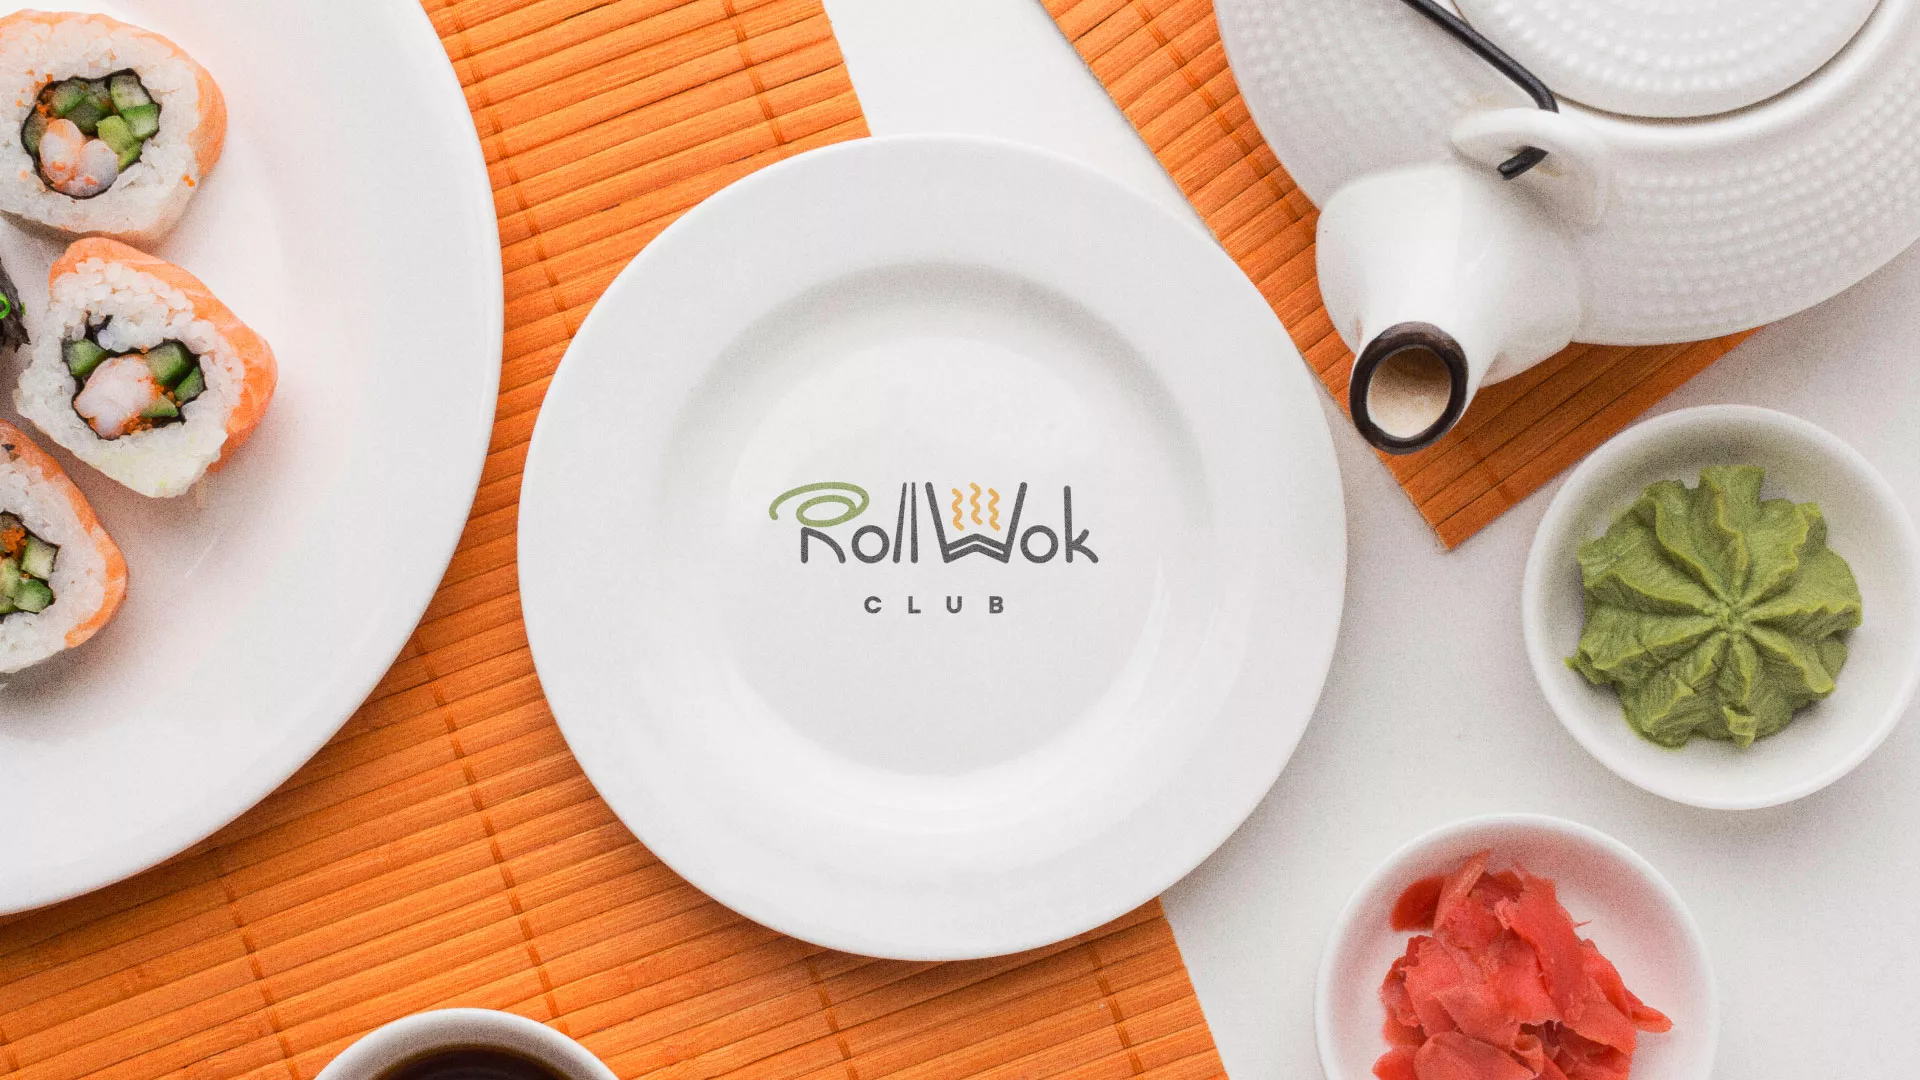 Разработка логотипа и фирменного стиля суши-бара «Roll Wok Club» в Гурьевске